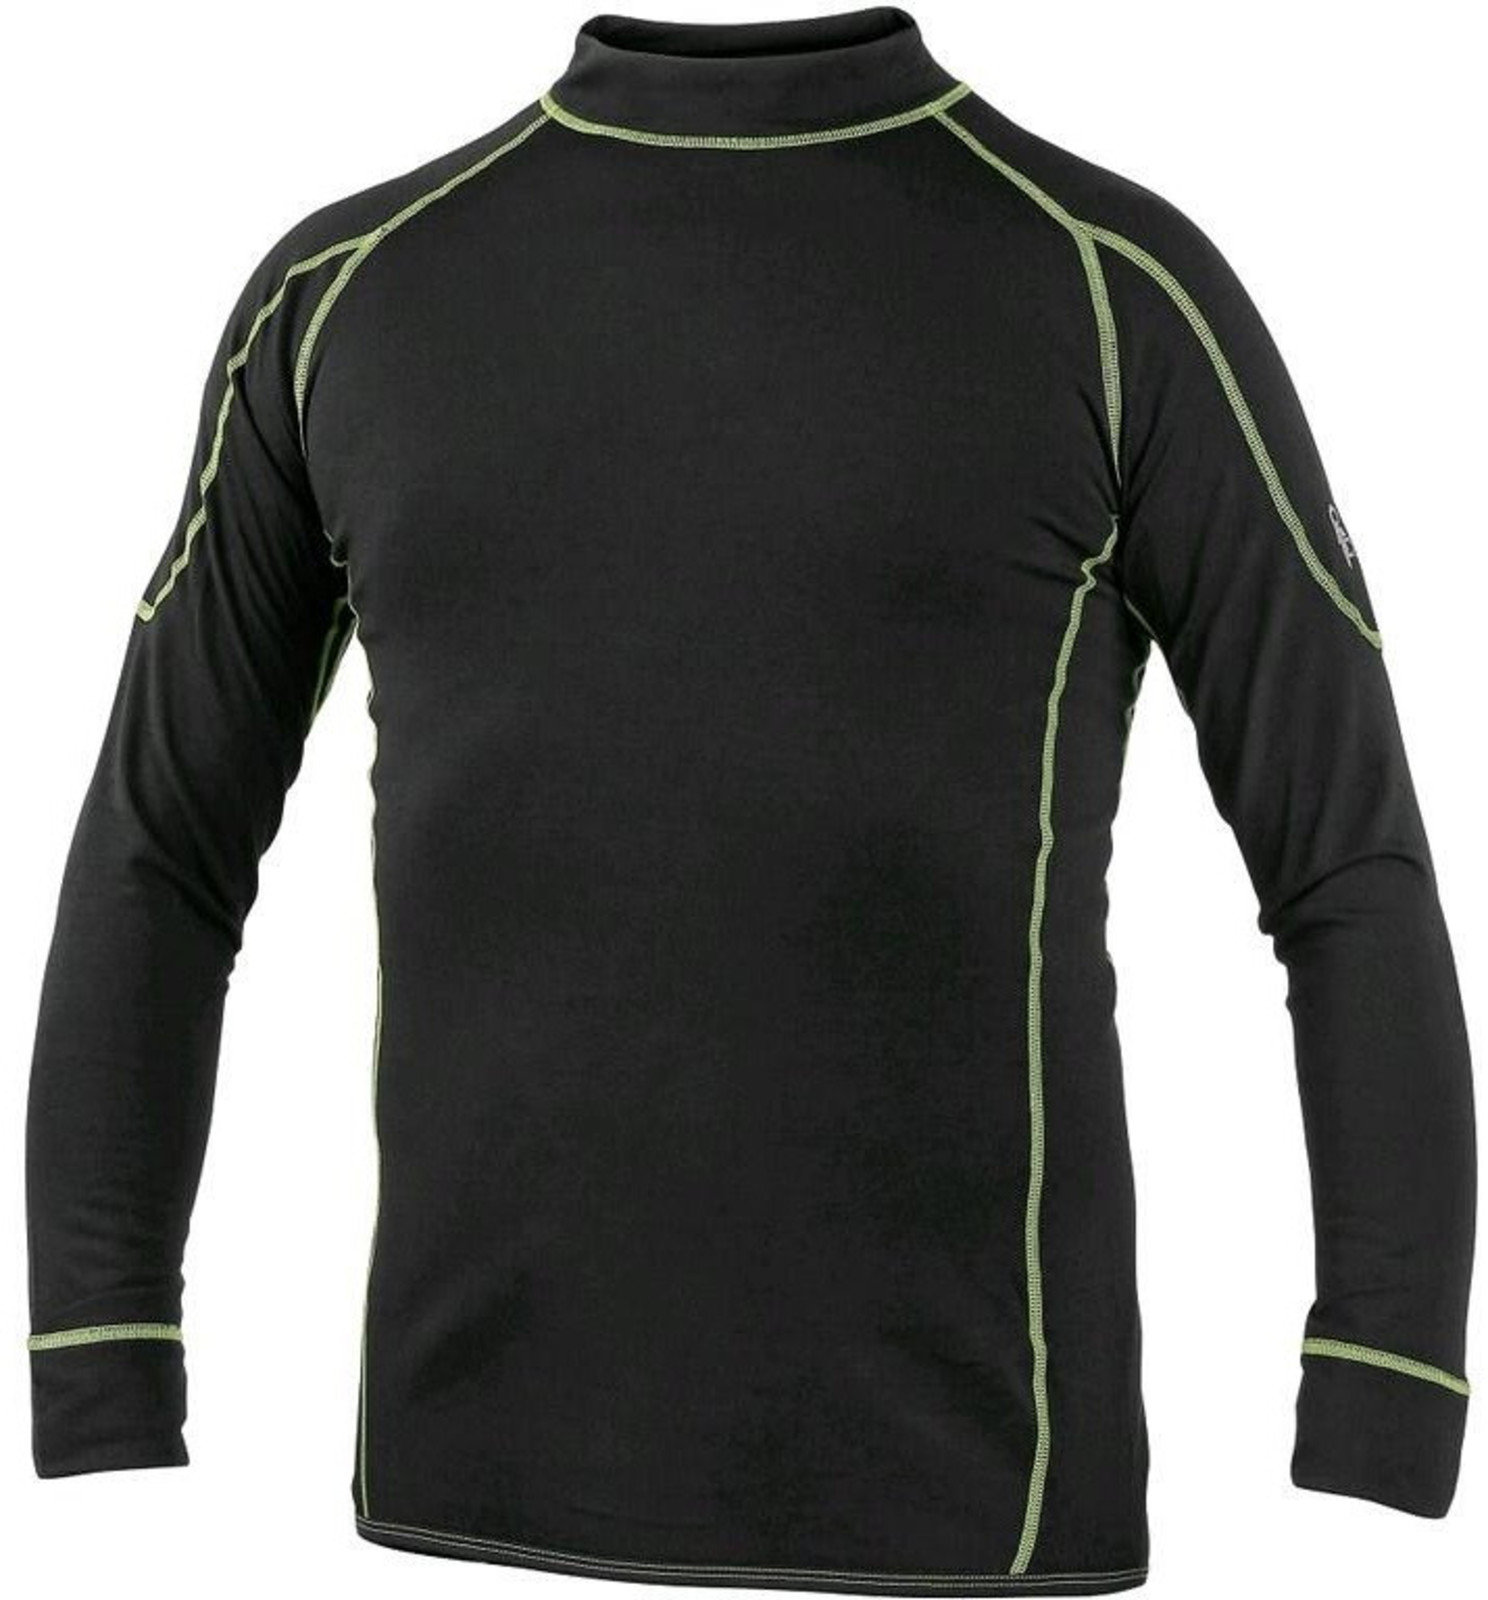 Detské termo tričko s dlhým rukávom CXS Reward - veľkosť: 140, farba: čierna/zelená